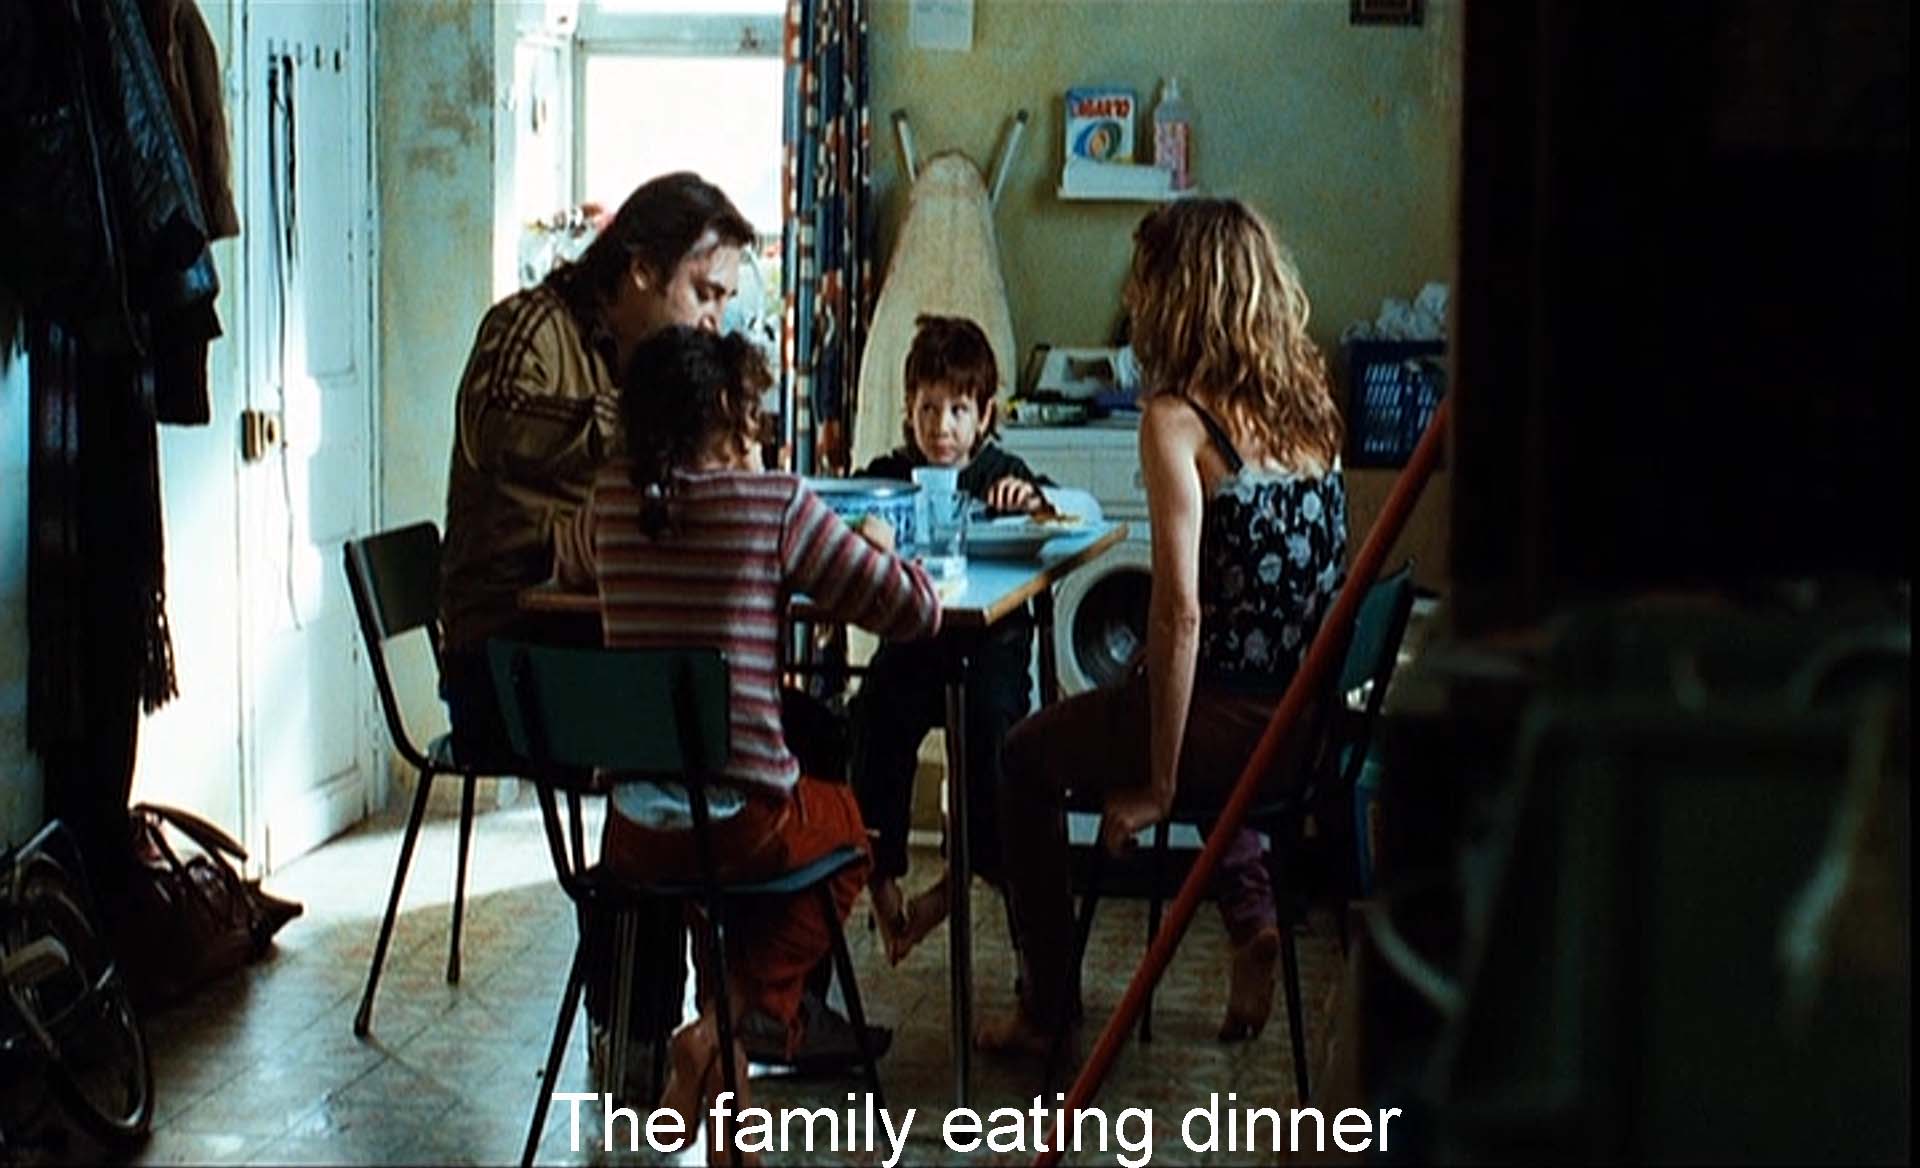 The family eating dinner